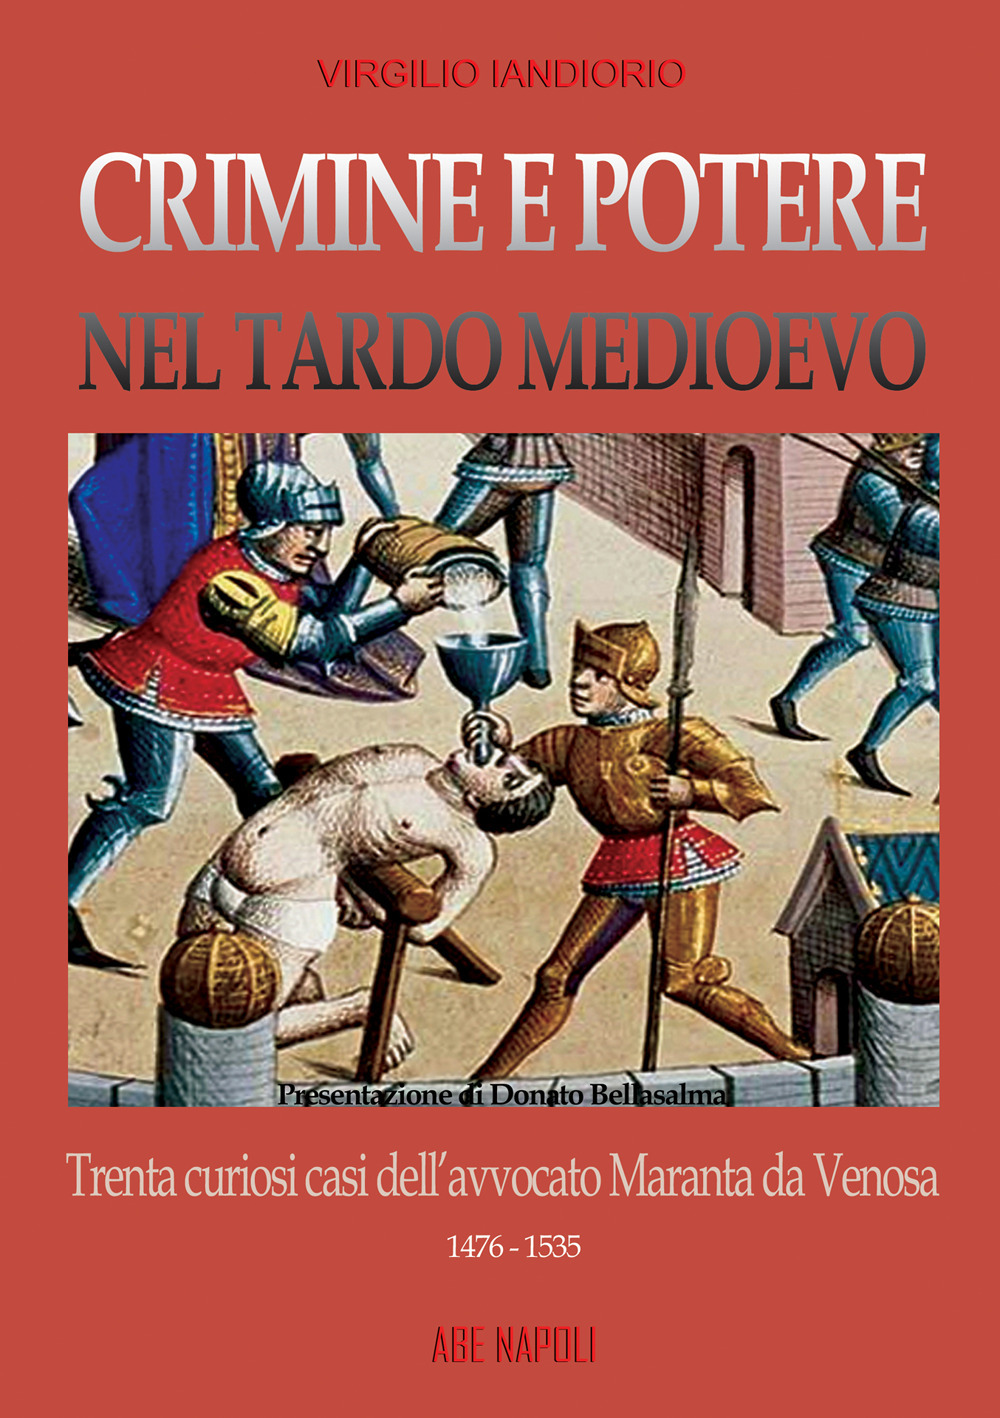 Crimine e potere nel Tardo Medioevo. Trenta curiosi casi nazionali dell'avvocato Maranta da Venosa 1476-1535